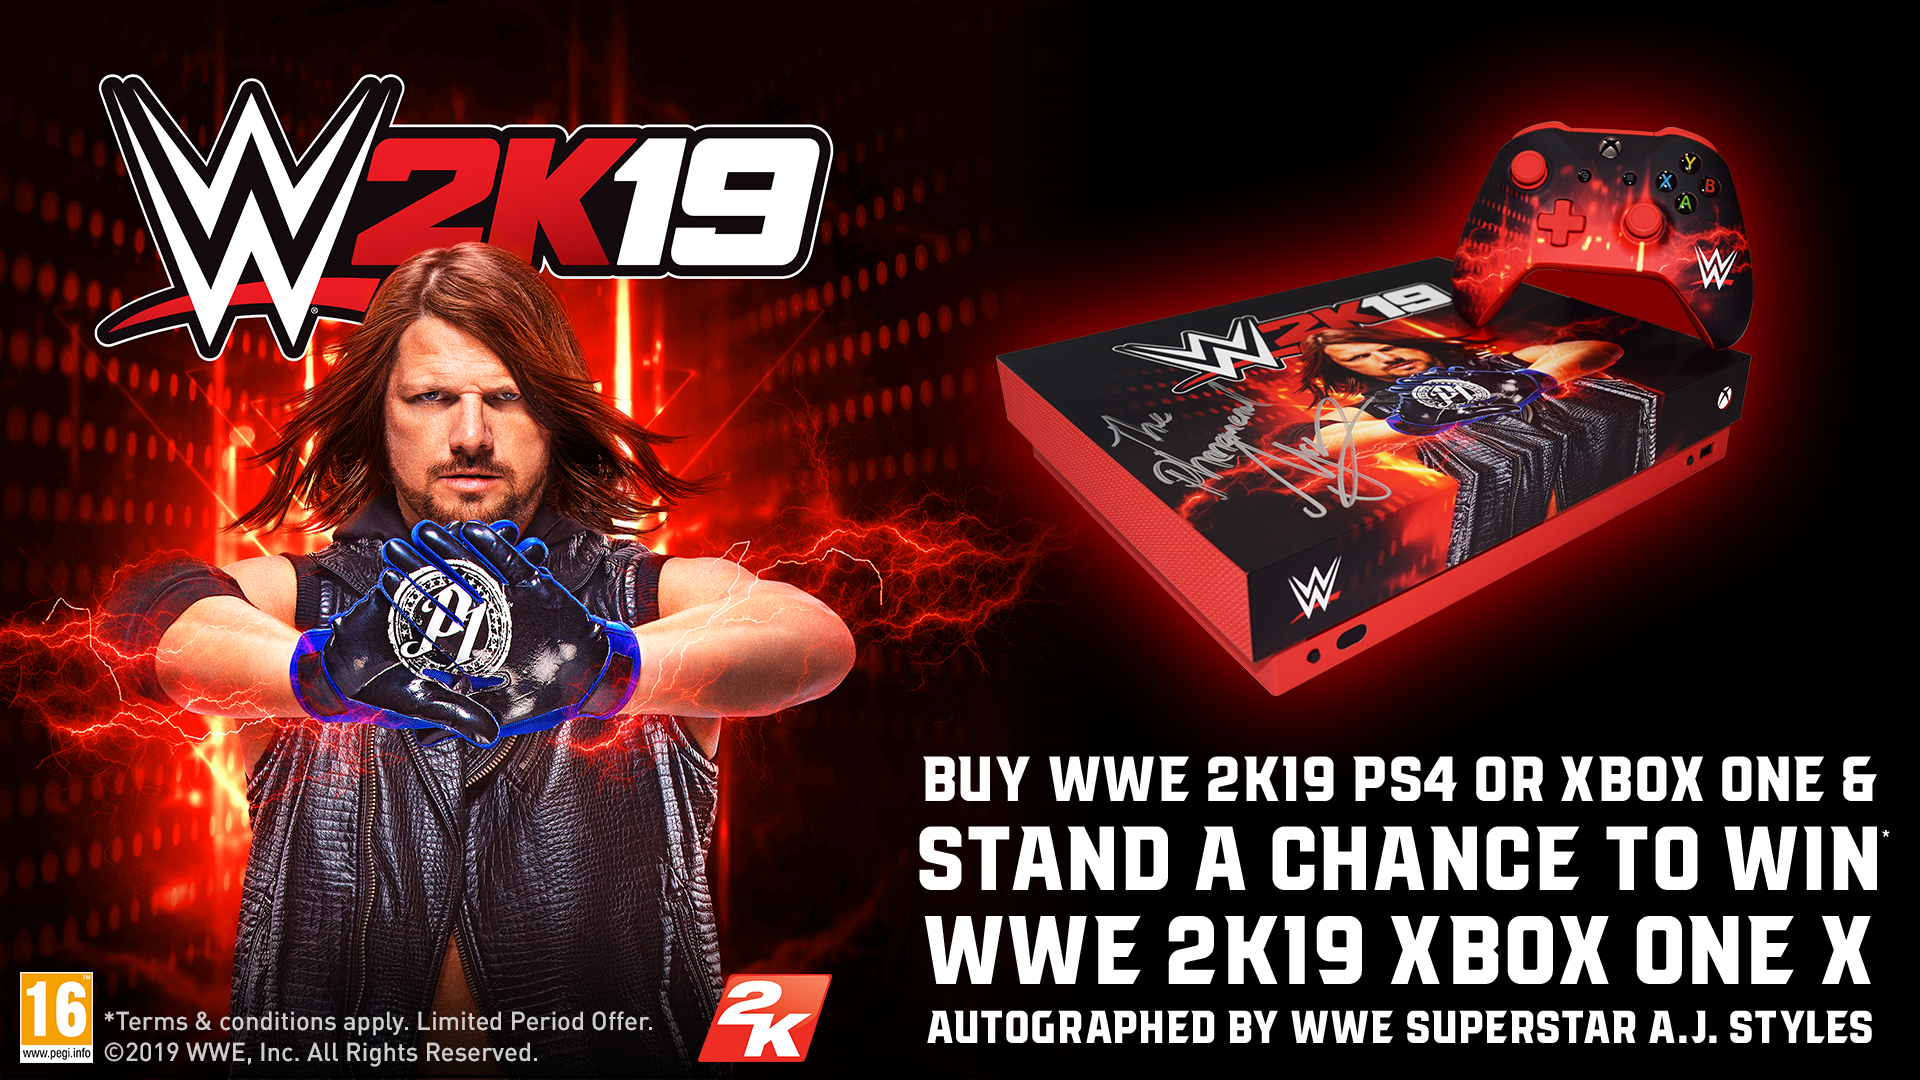 WWE 2K19 themed Xbox One X